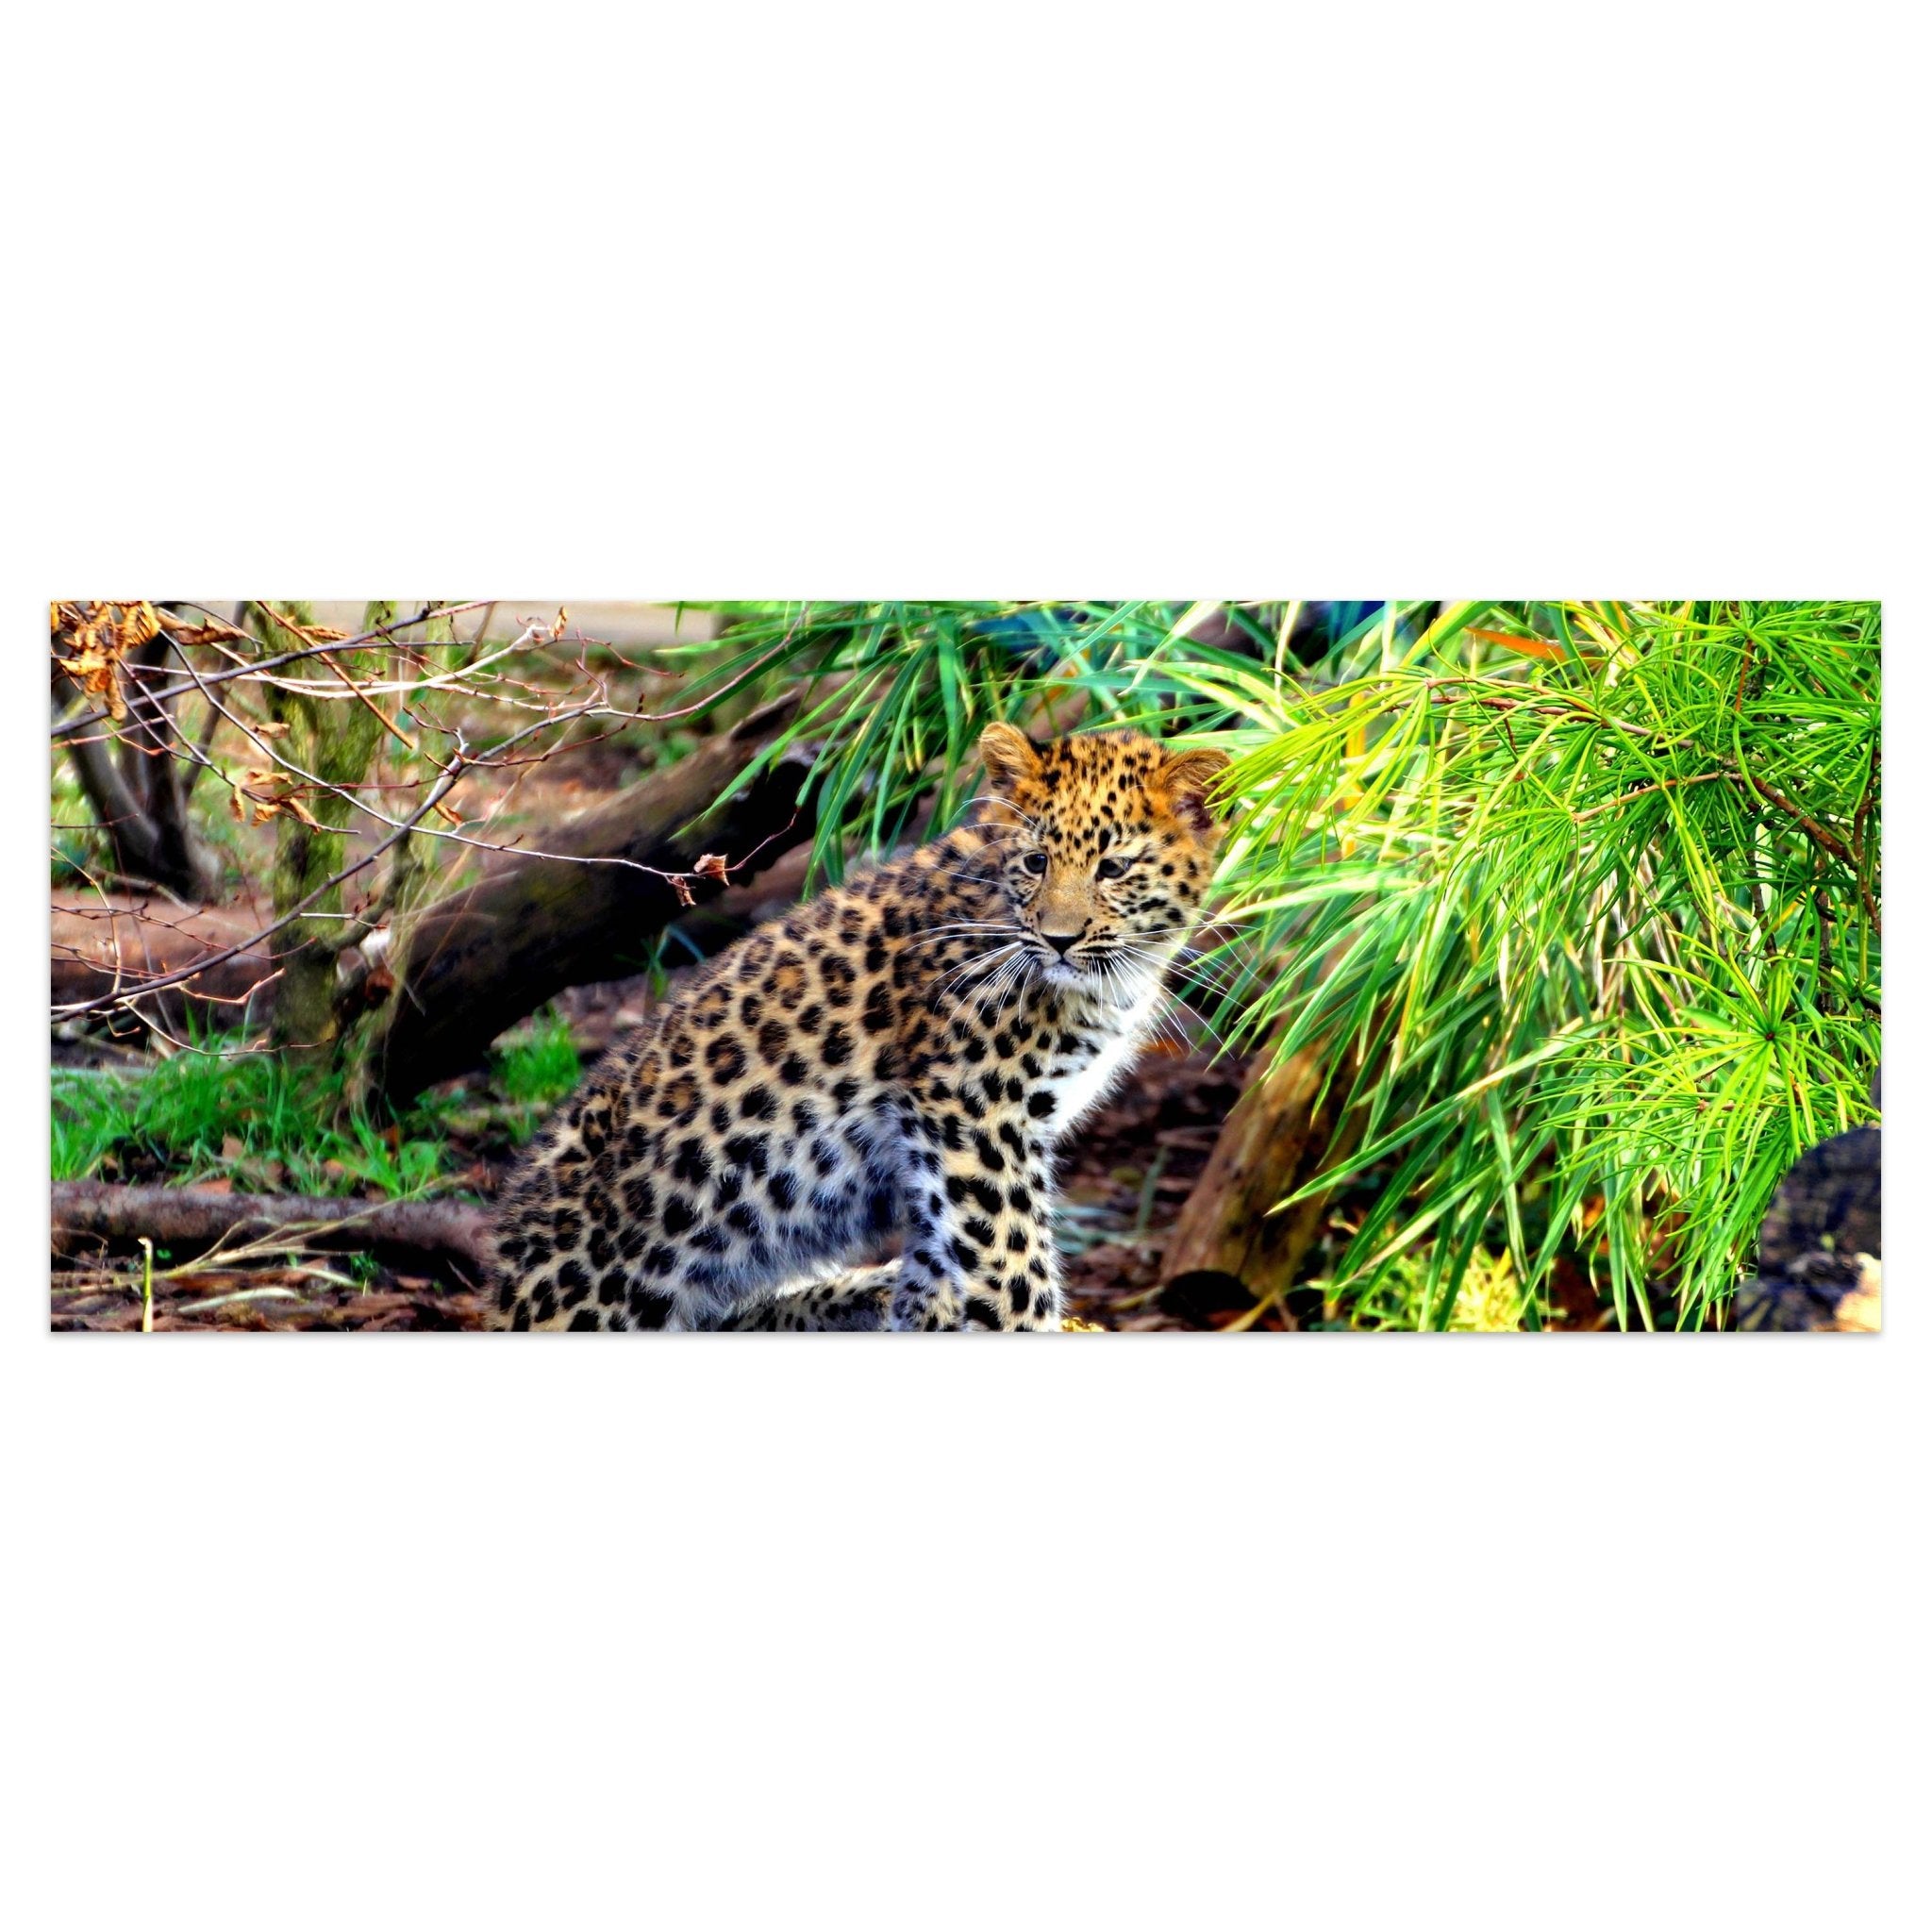 Leinwandbild Kleiner Leopard M1060 kaufen - Bild 1